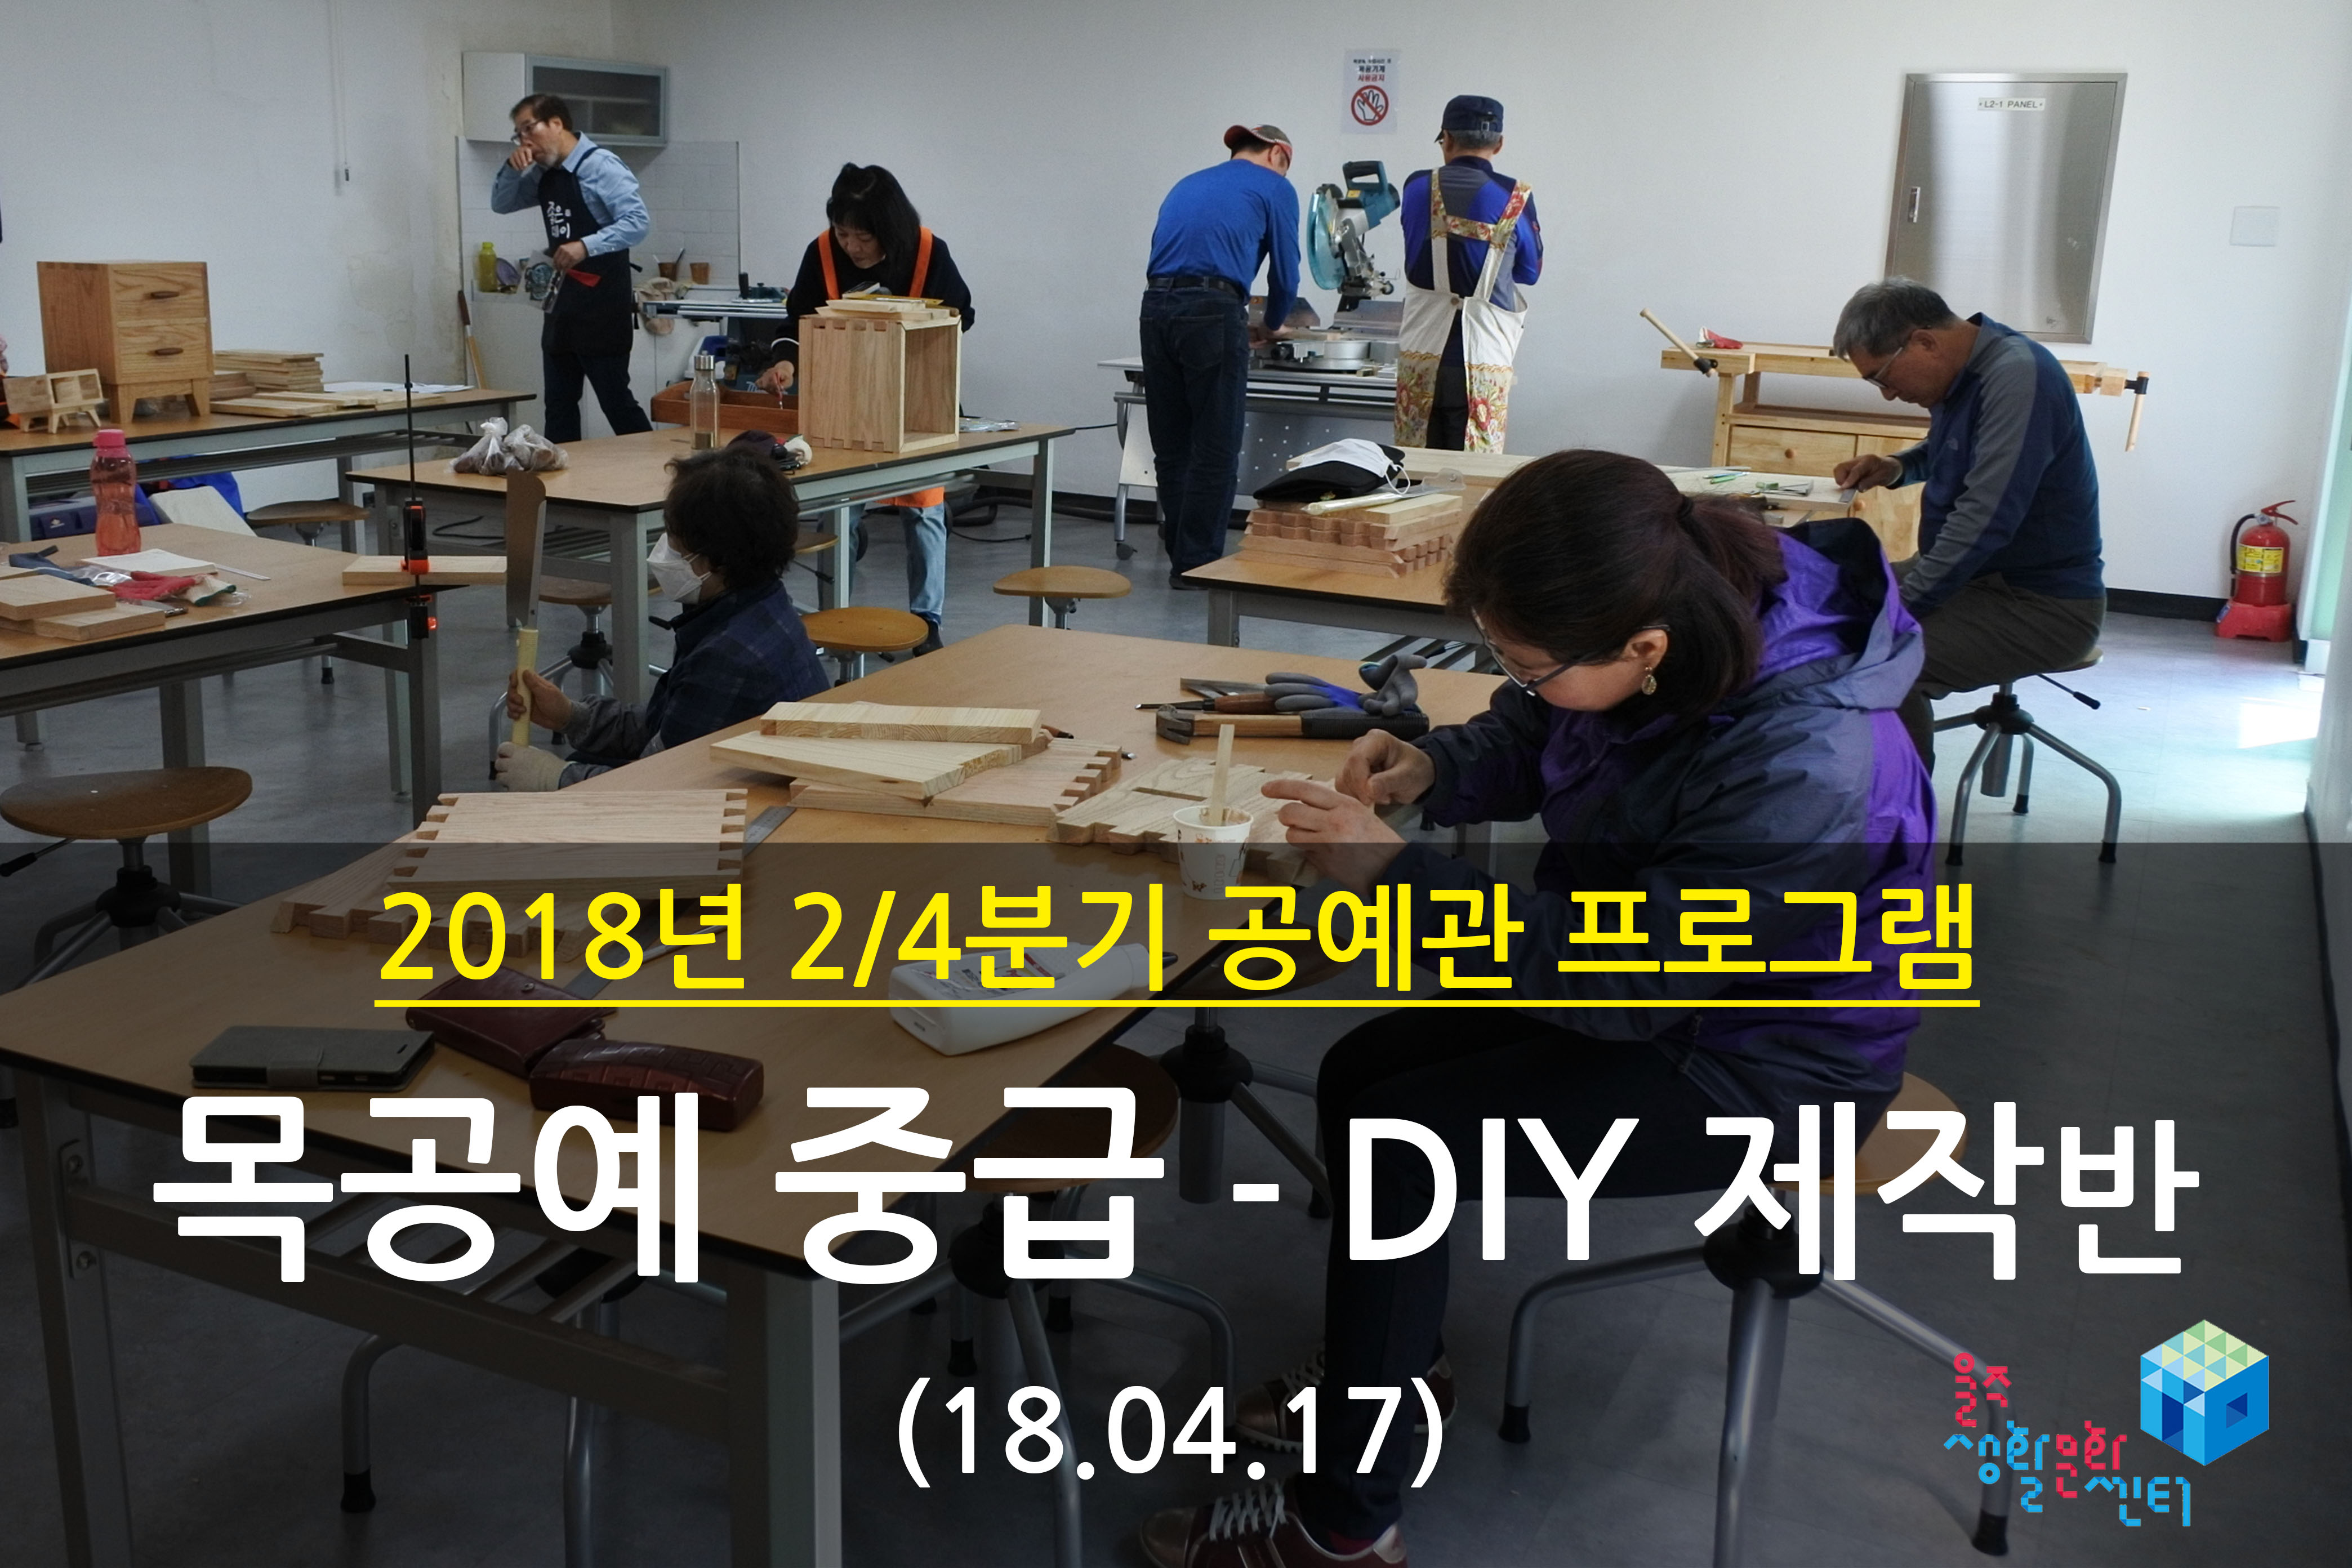 2018.04.17 _ 목공예 중급 - DIY 제작반 _ 2/4분기 3주차 수업